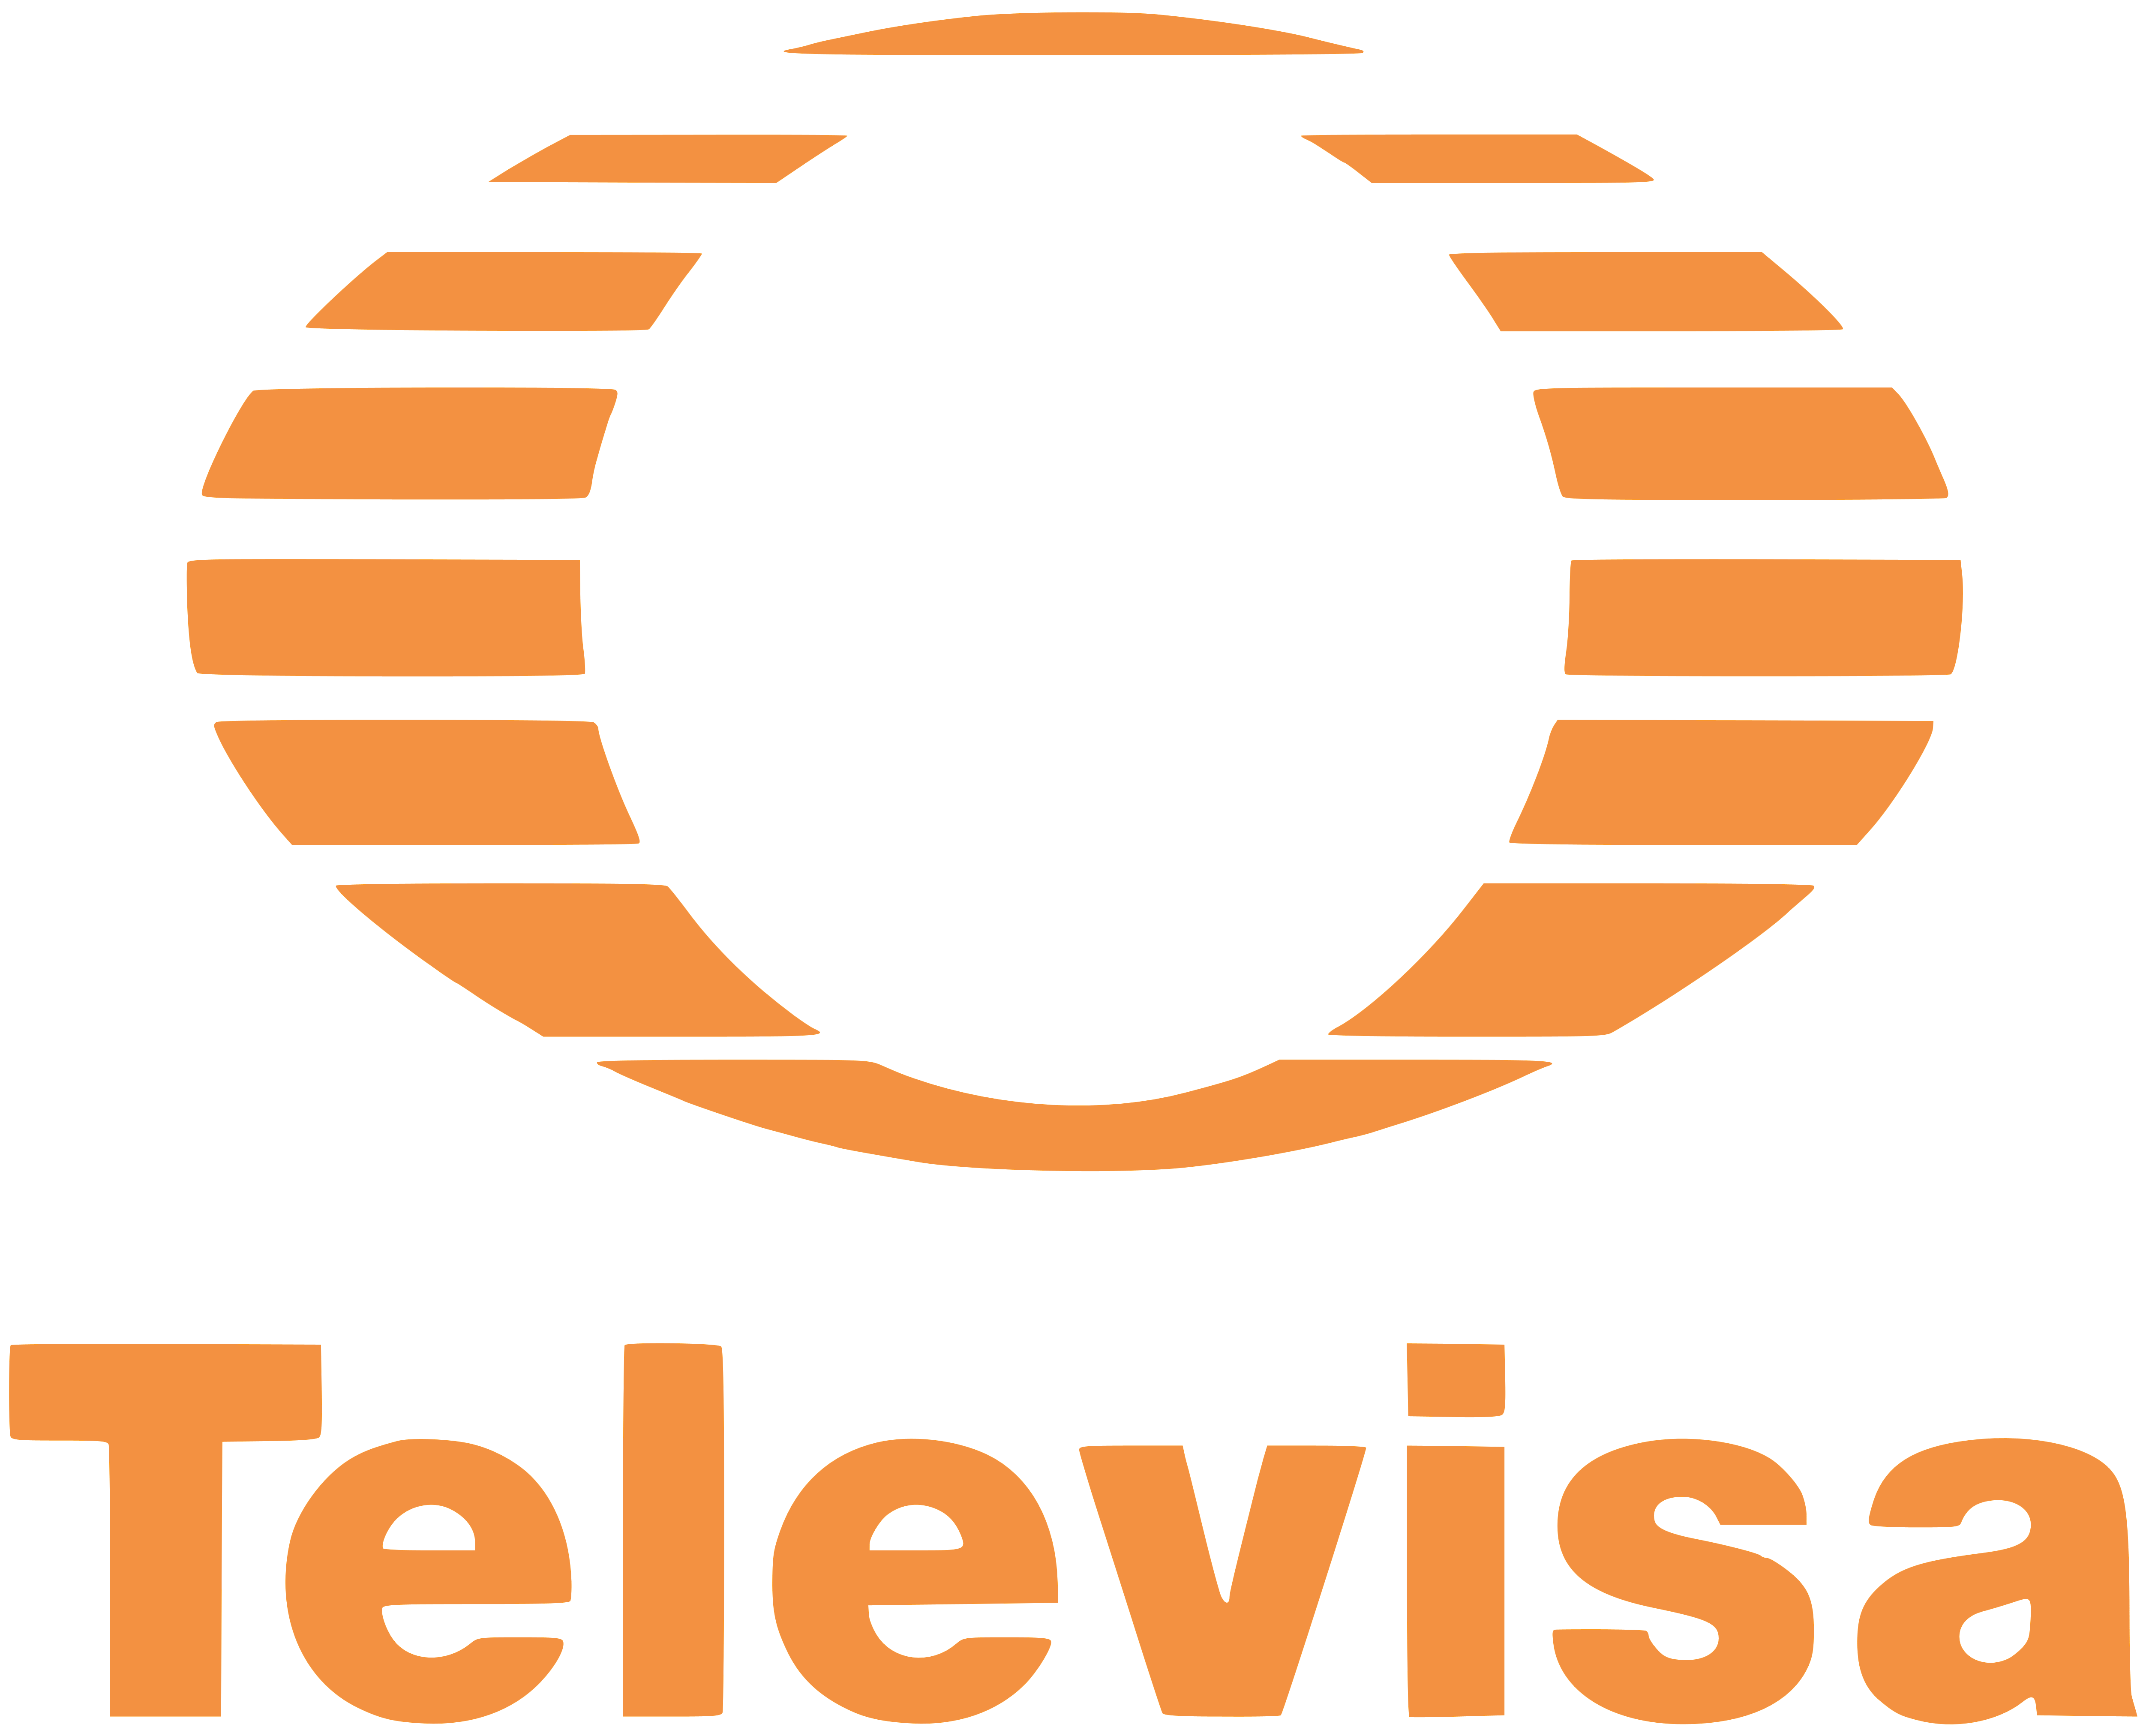 Televisa – Logos Download